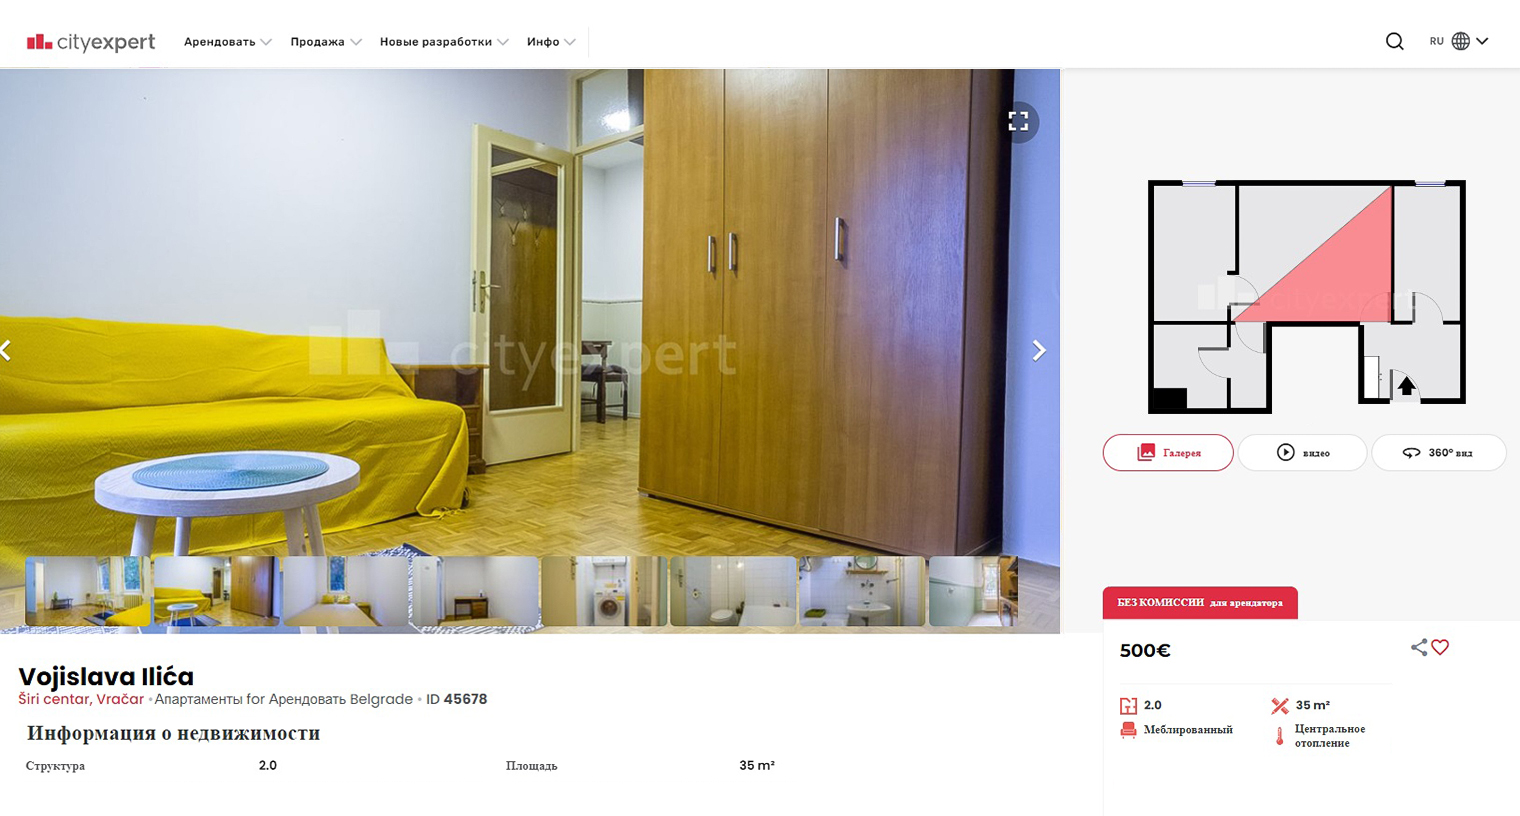 Простенькую двушку во Врачаре можно найти за 500 € в месяц. Источник: cityexpert.rs